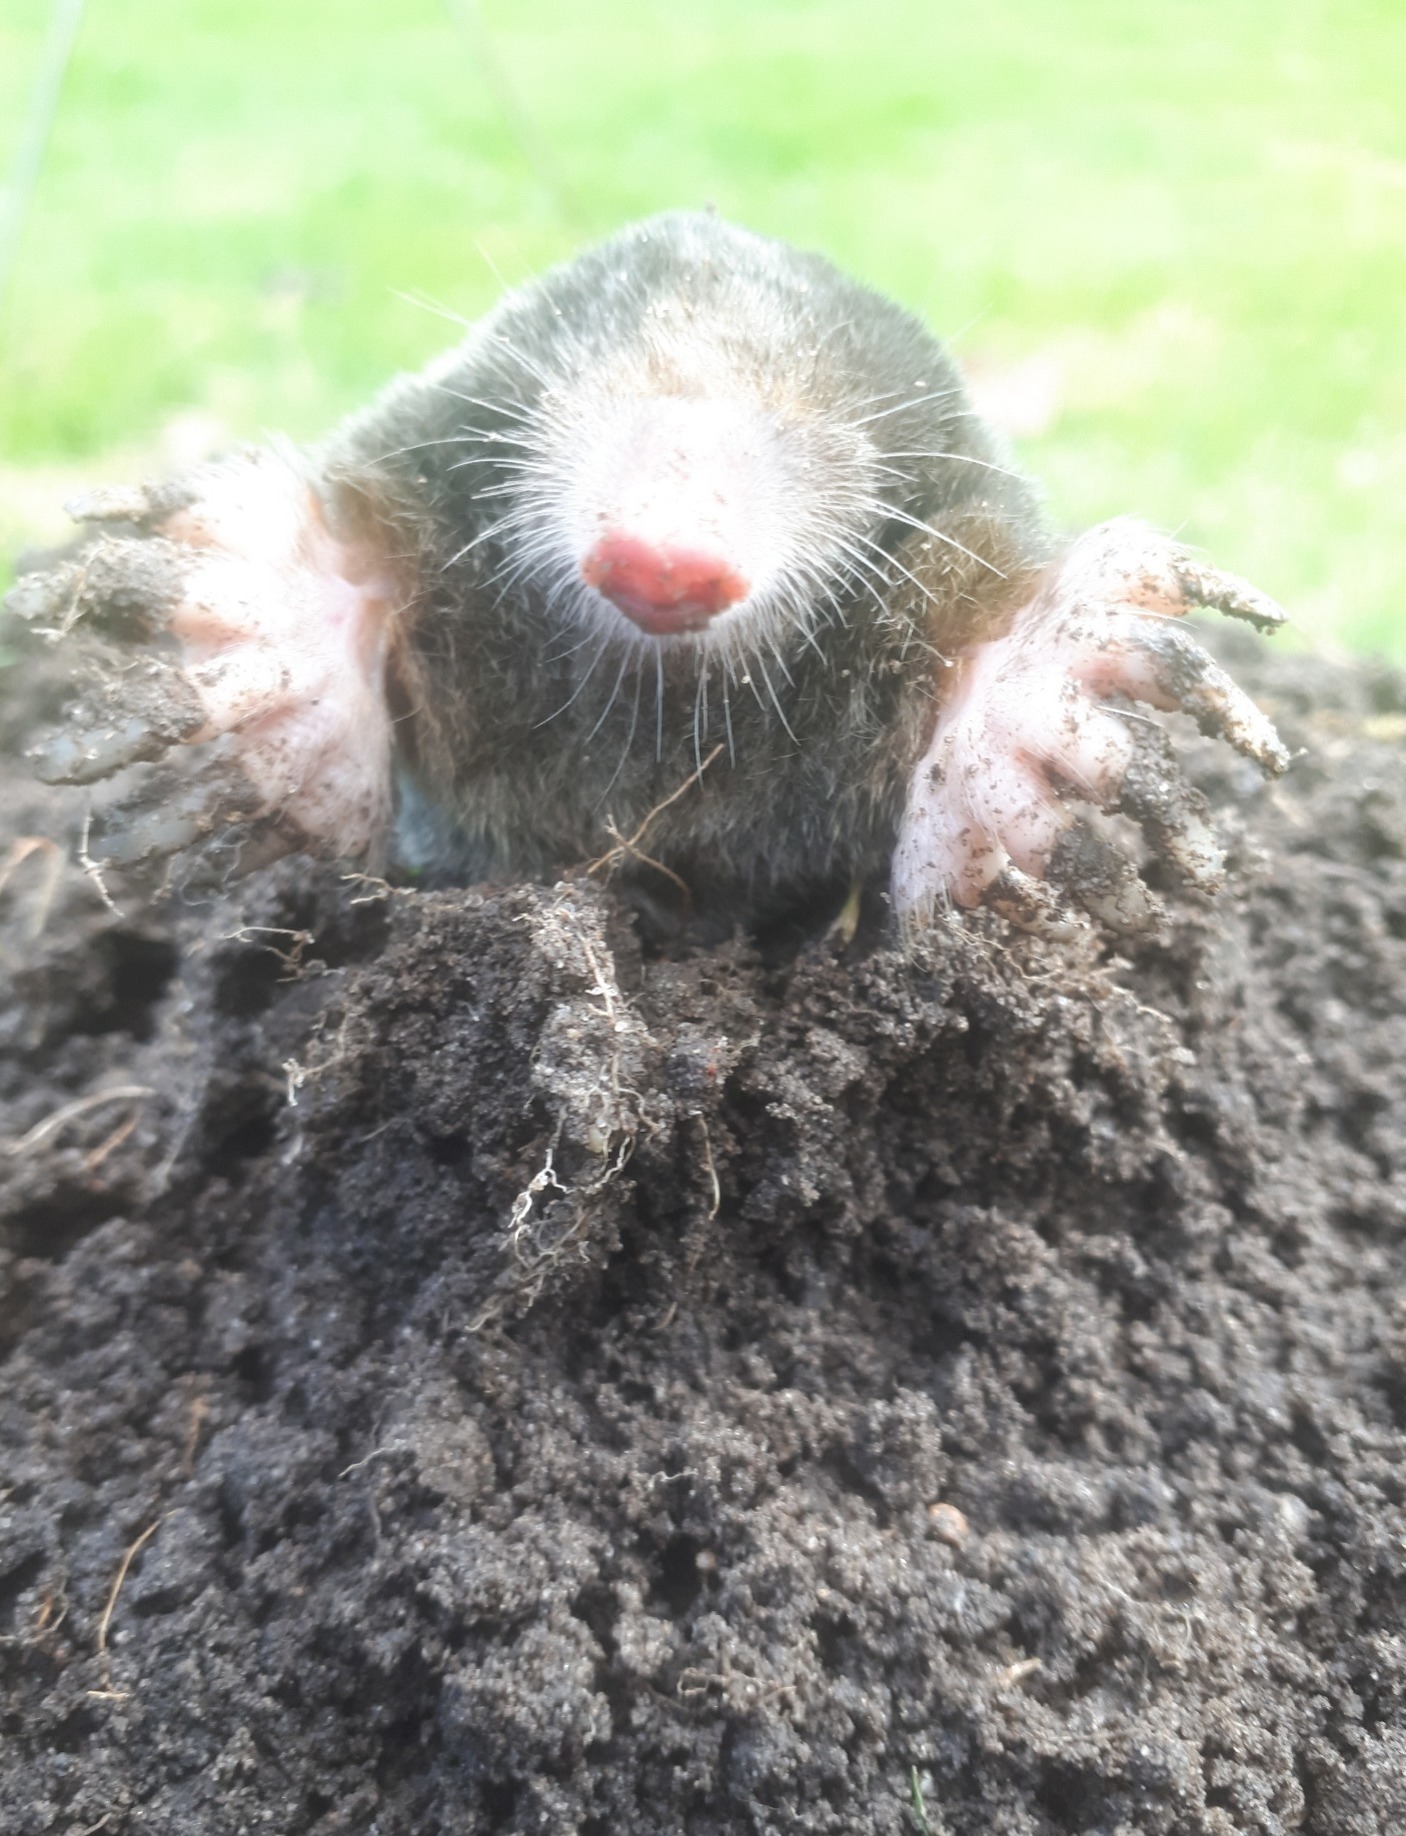 Mole in a mole hill